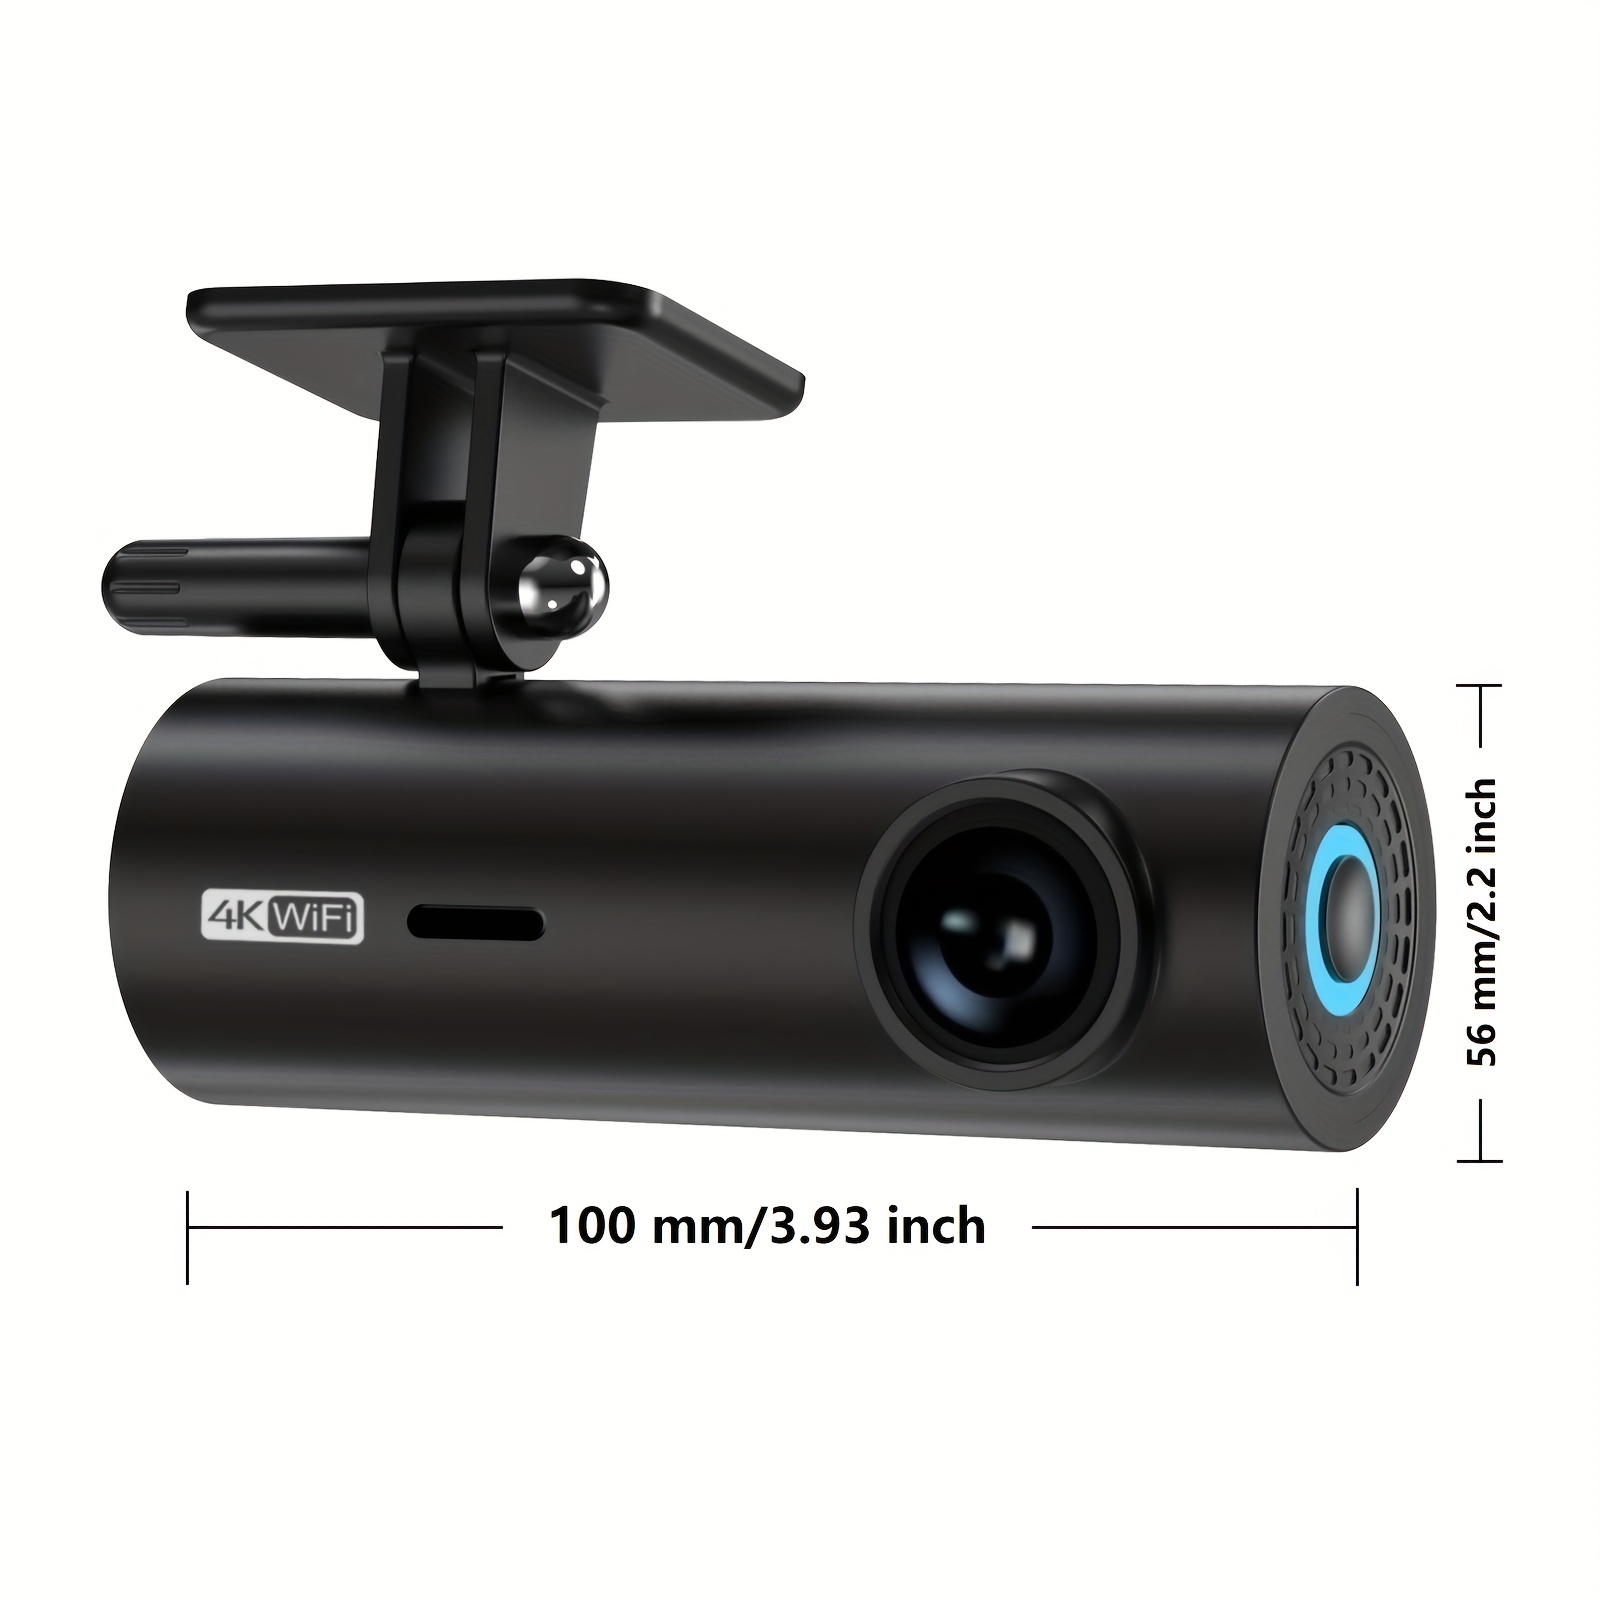 Dash Cams For Cars FHD 1080P 4 Lente Inalámbrica Grabación - Temu